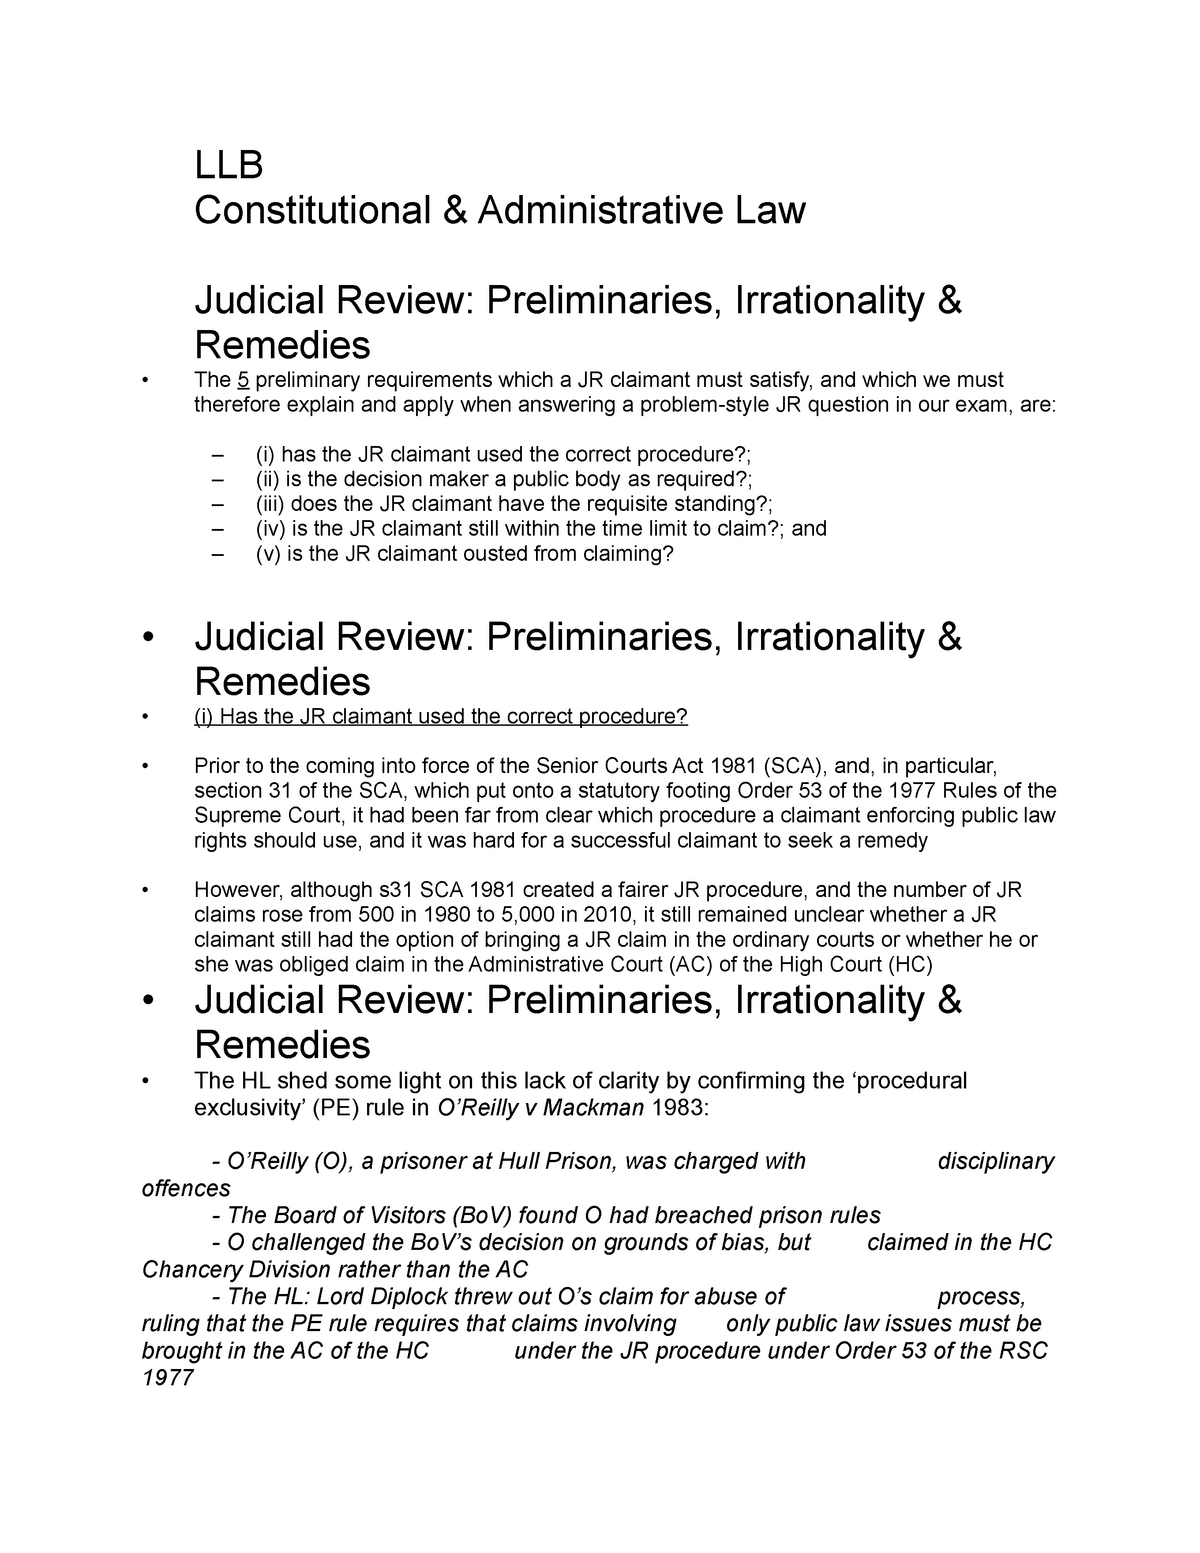 argumentative essay judicial review